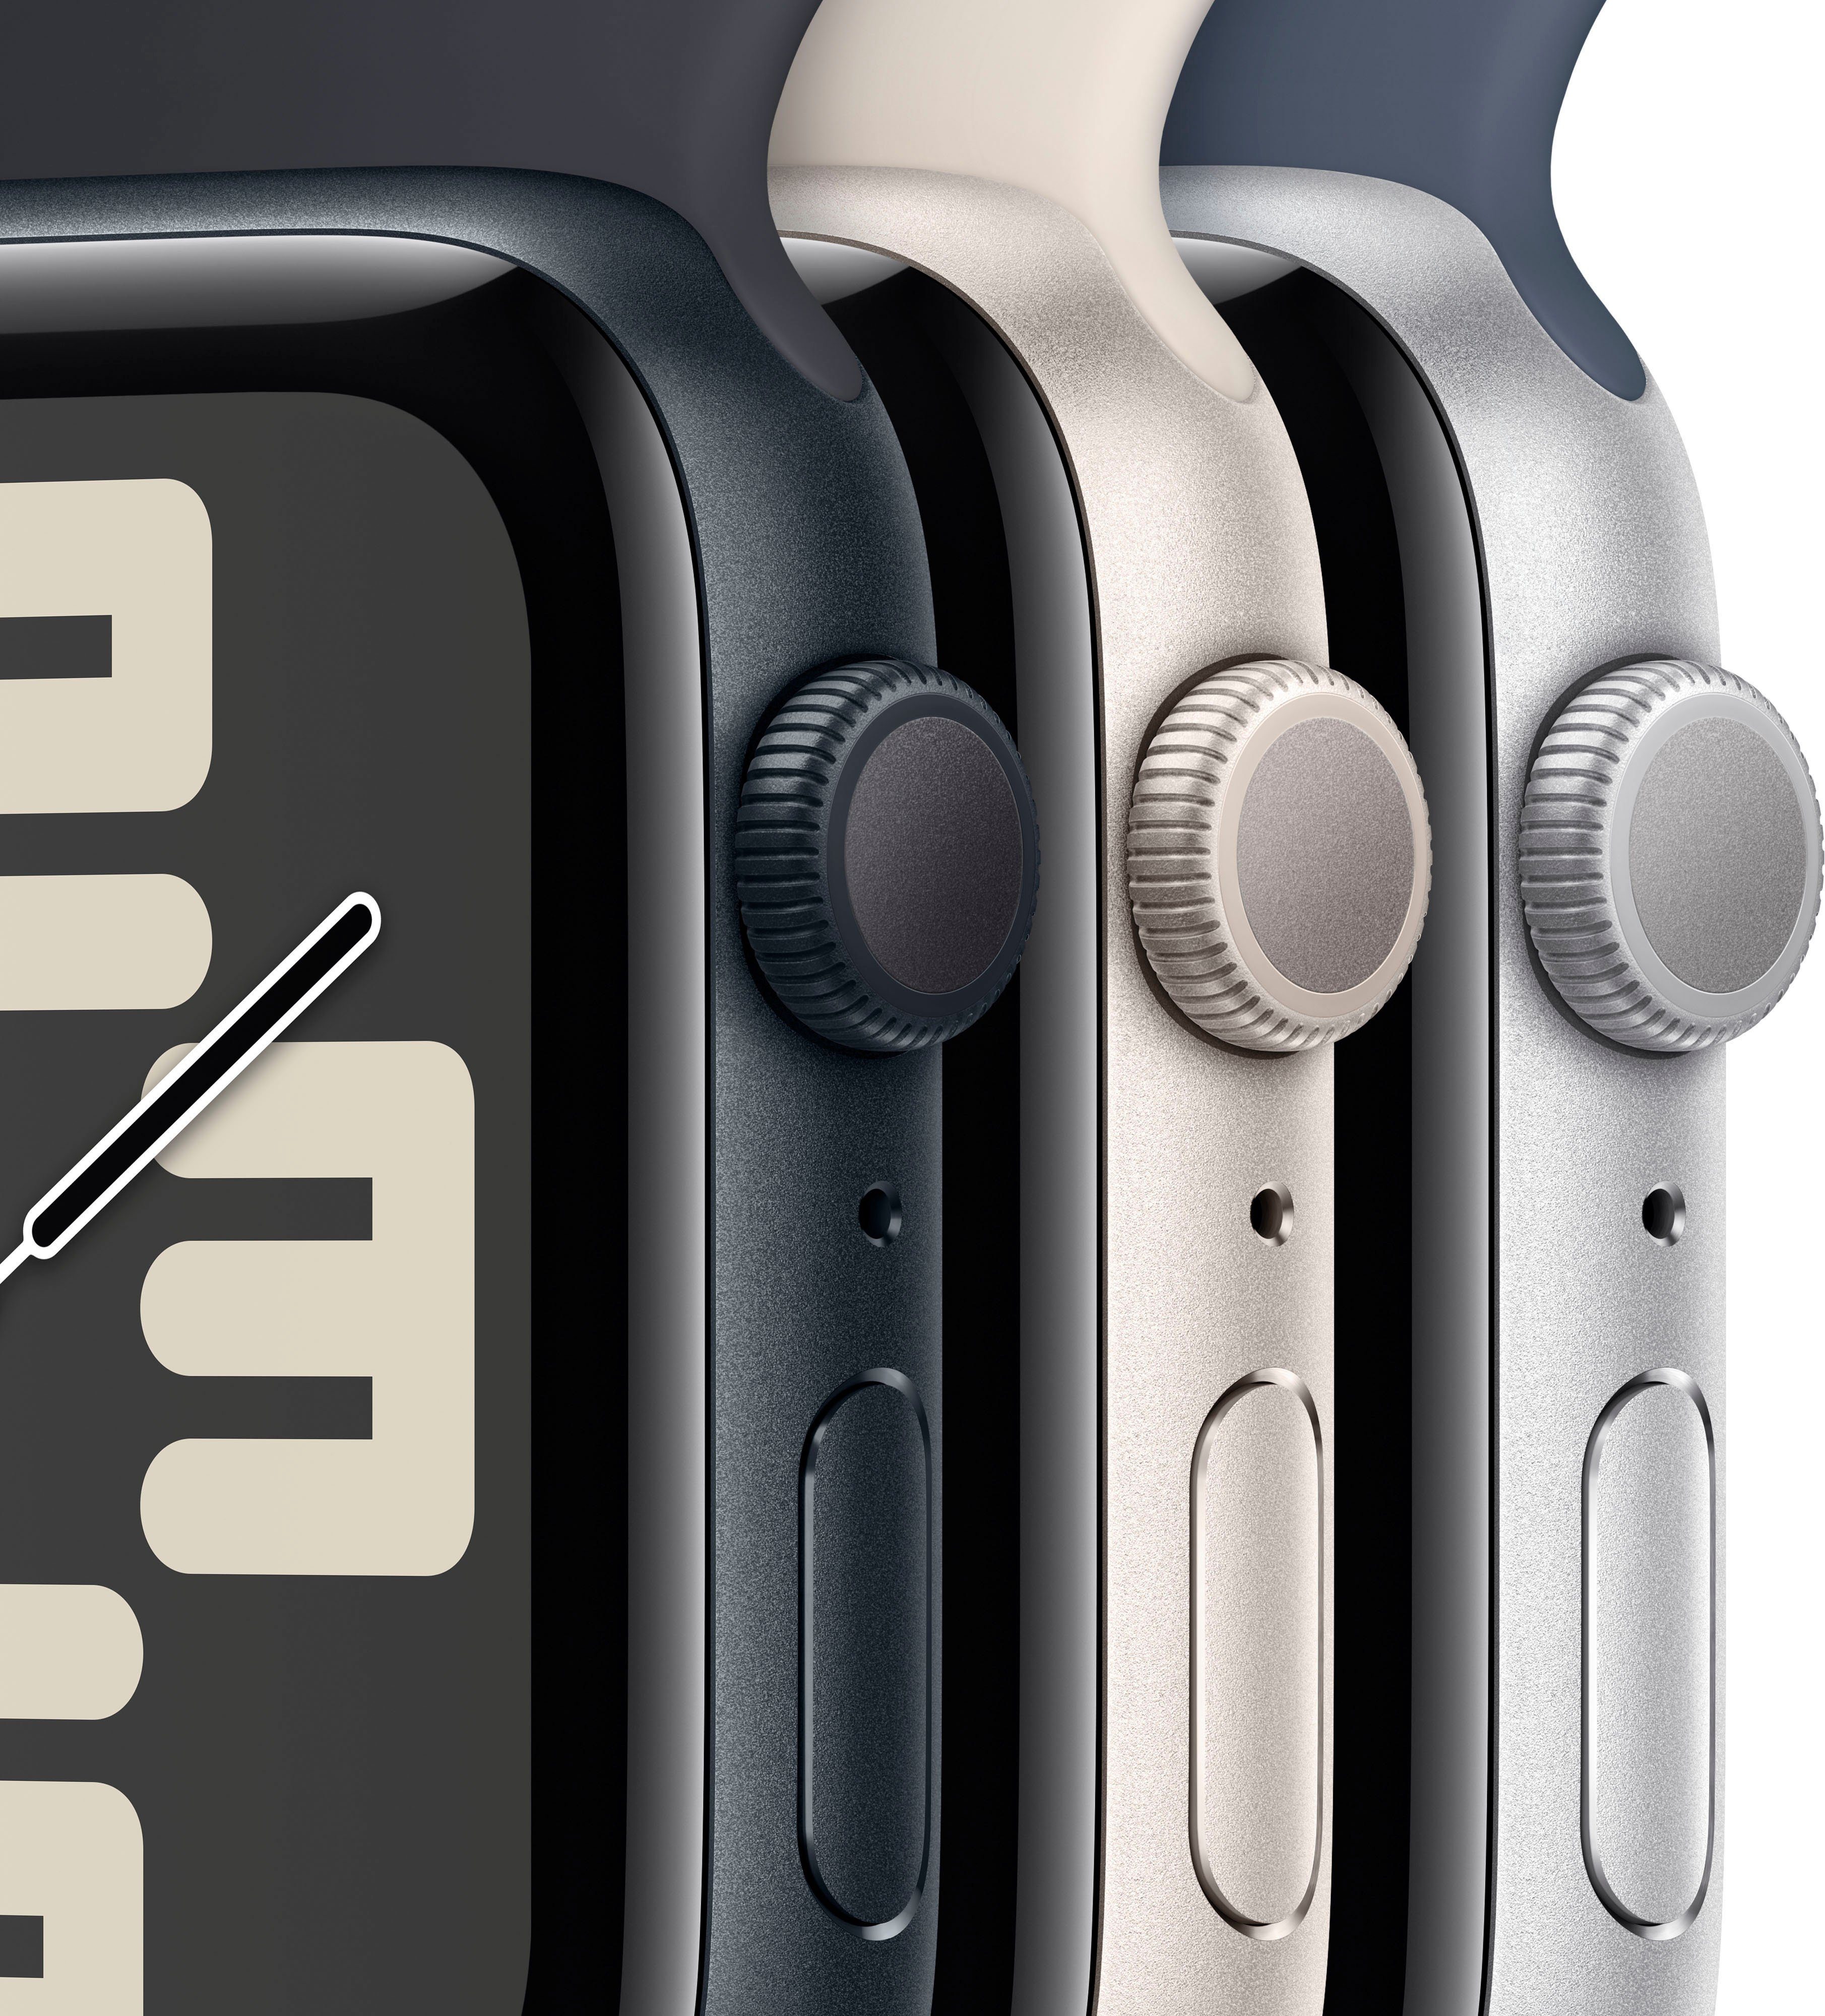 Watch | Mitternacht Zoll, OS SE (4 Mitternacht 10), Aluminium mm Watch Apple 40 GPS Smartwatch M/L cm/1,57 Sport Band